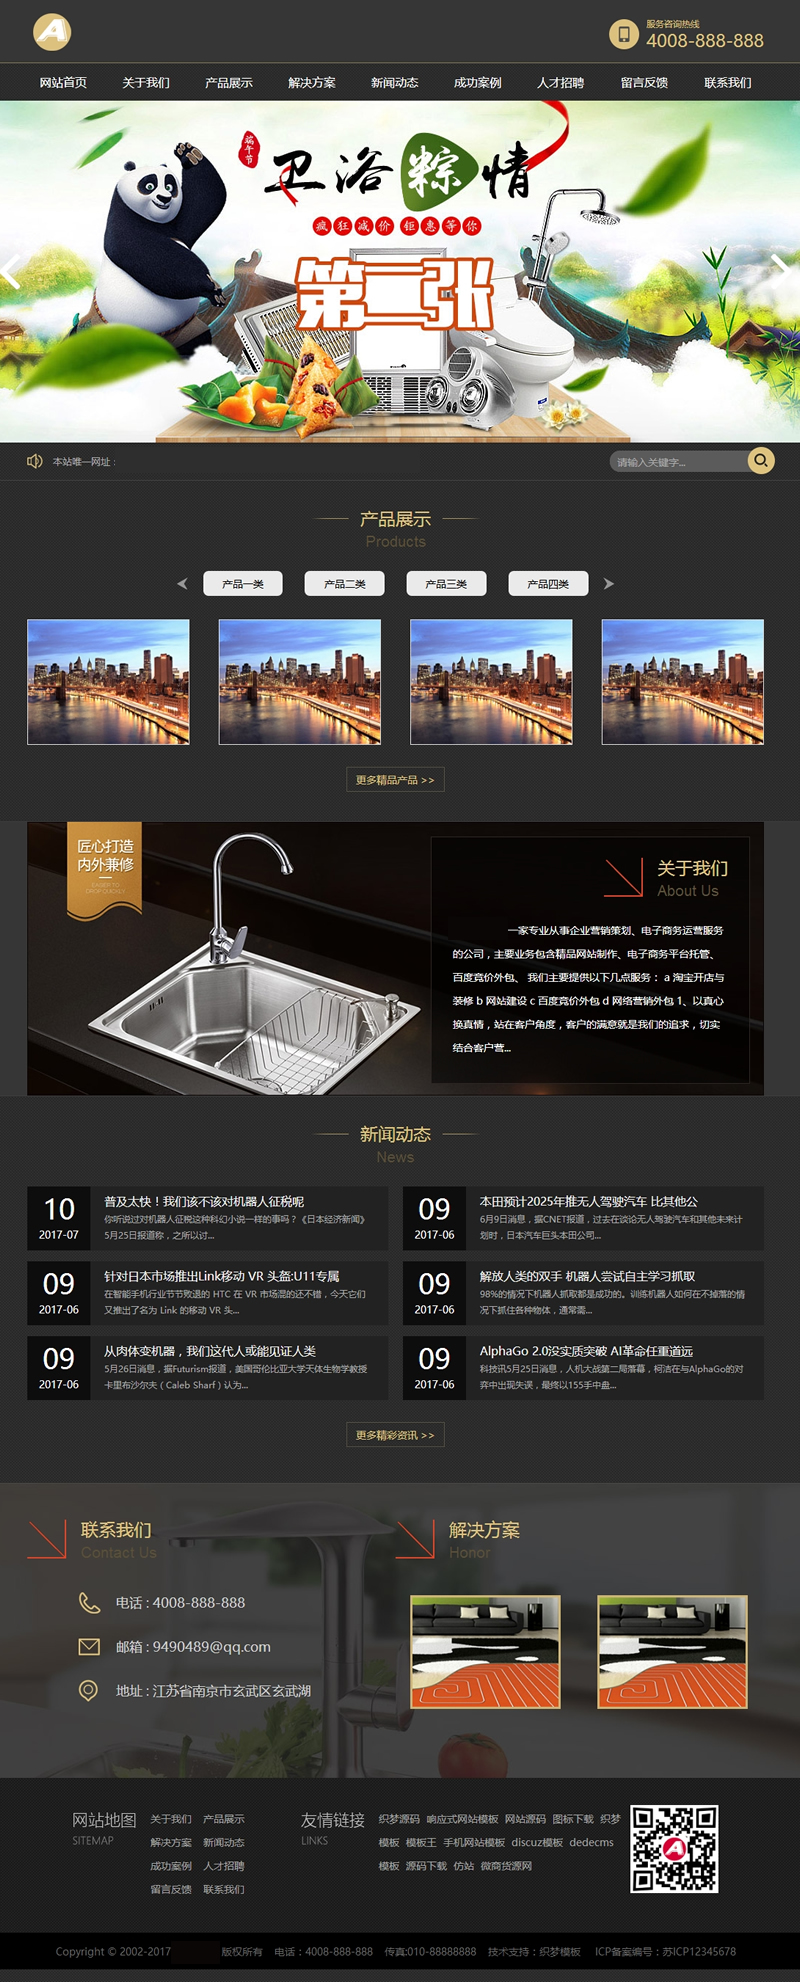 卫浴装修瓷砖网站首页模板